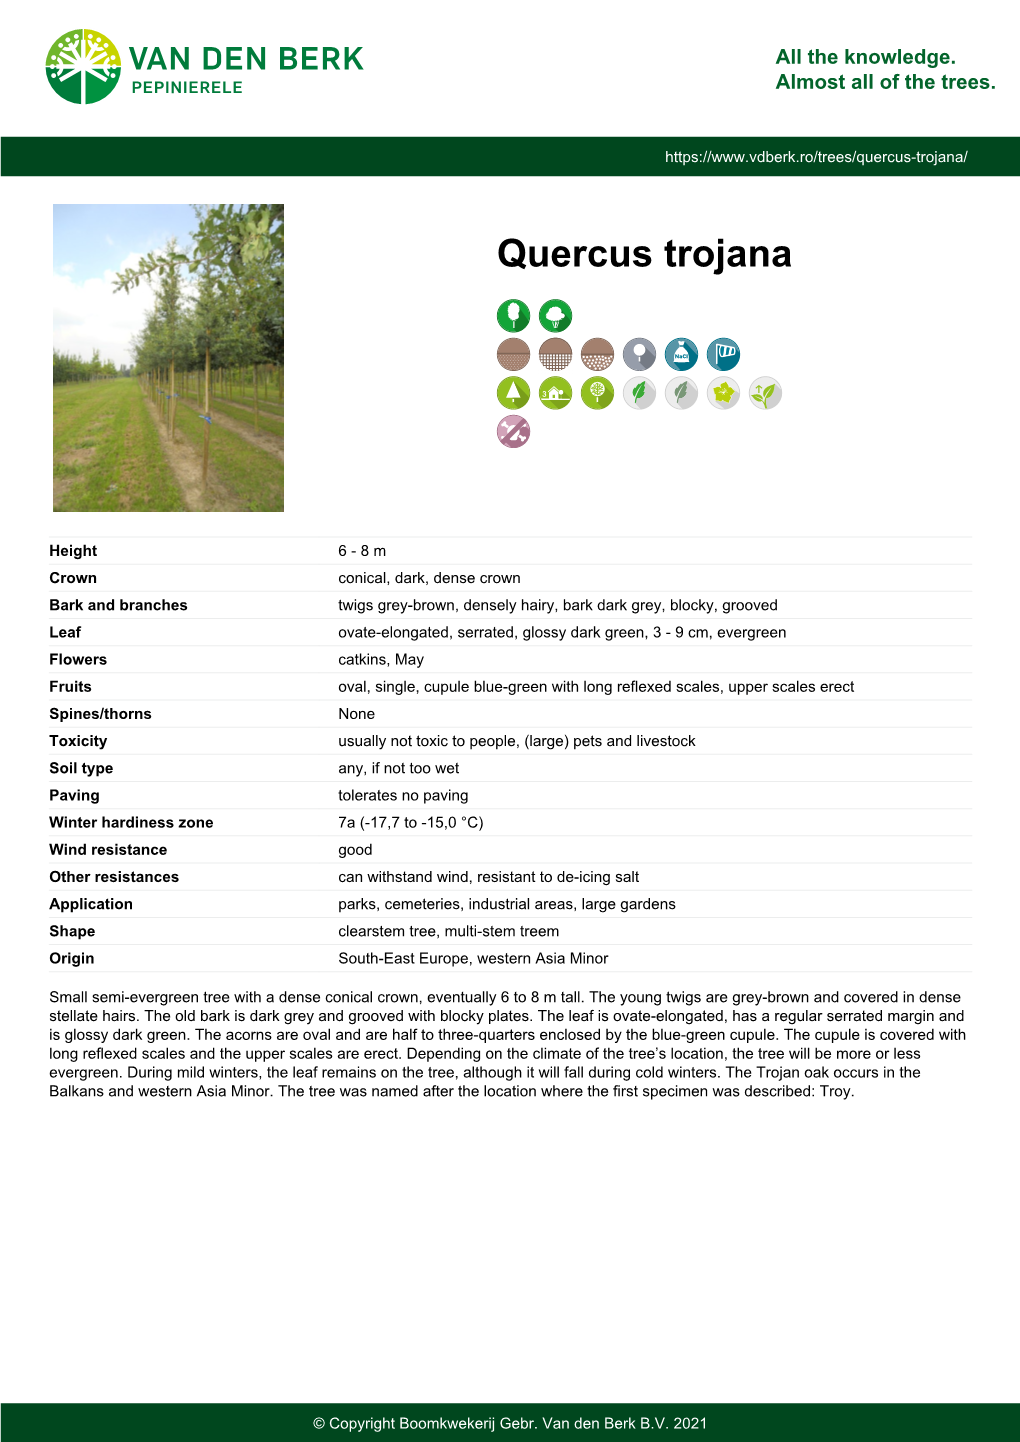 Quercus Trojana